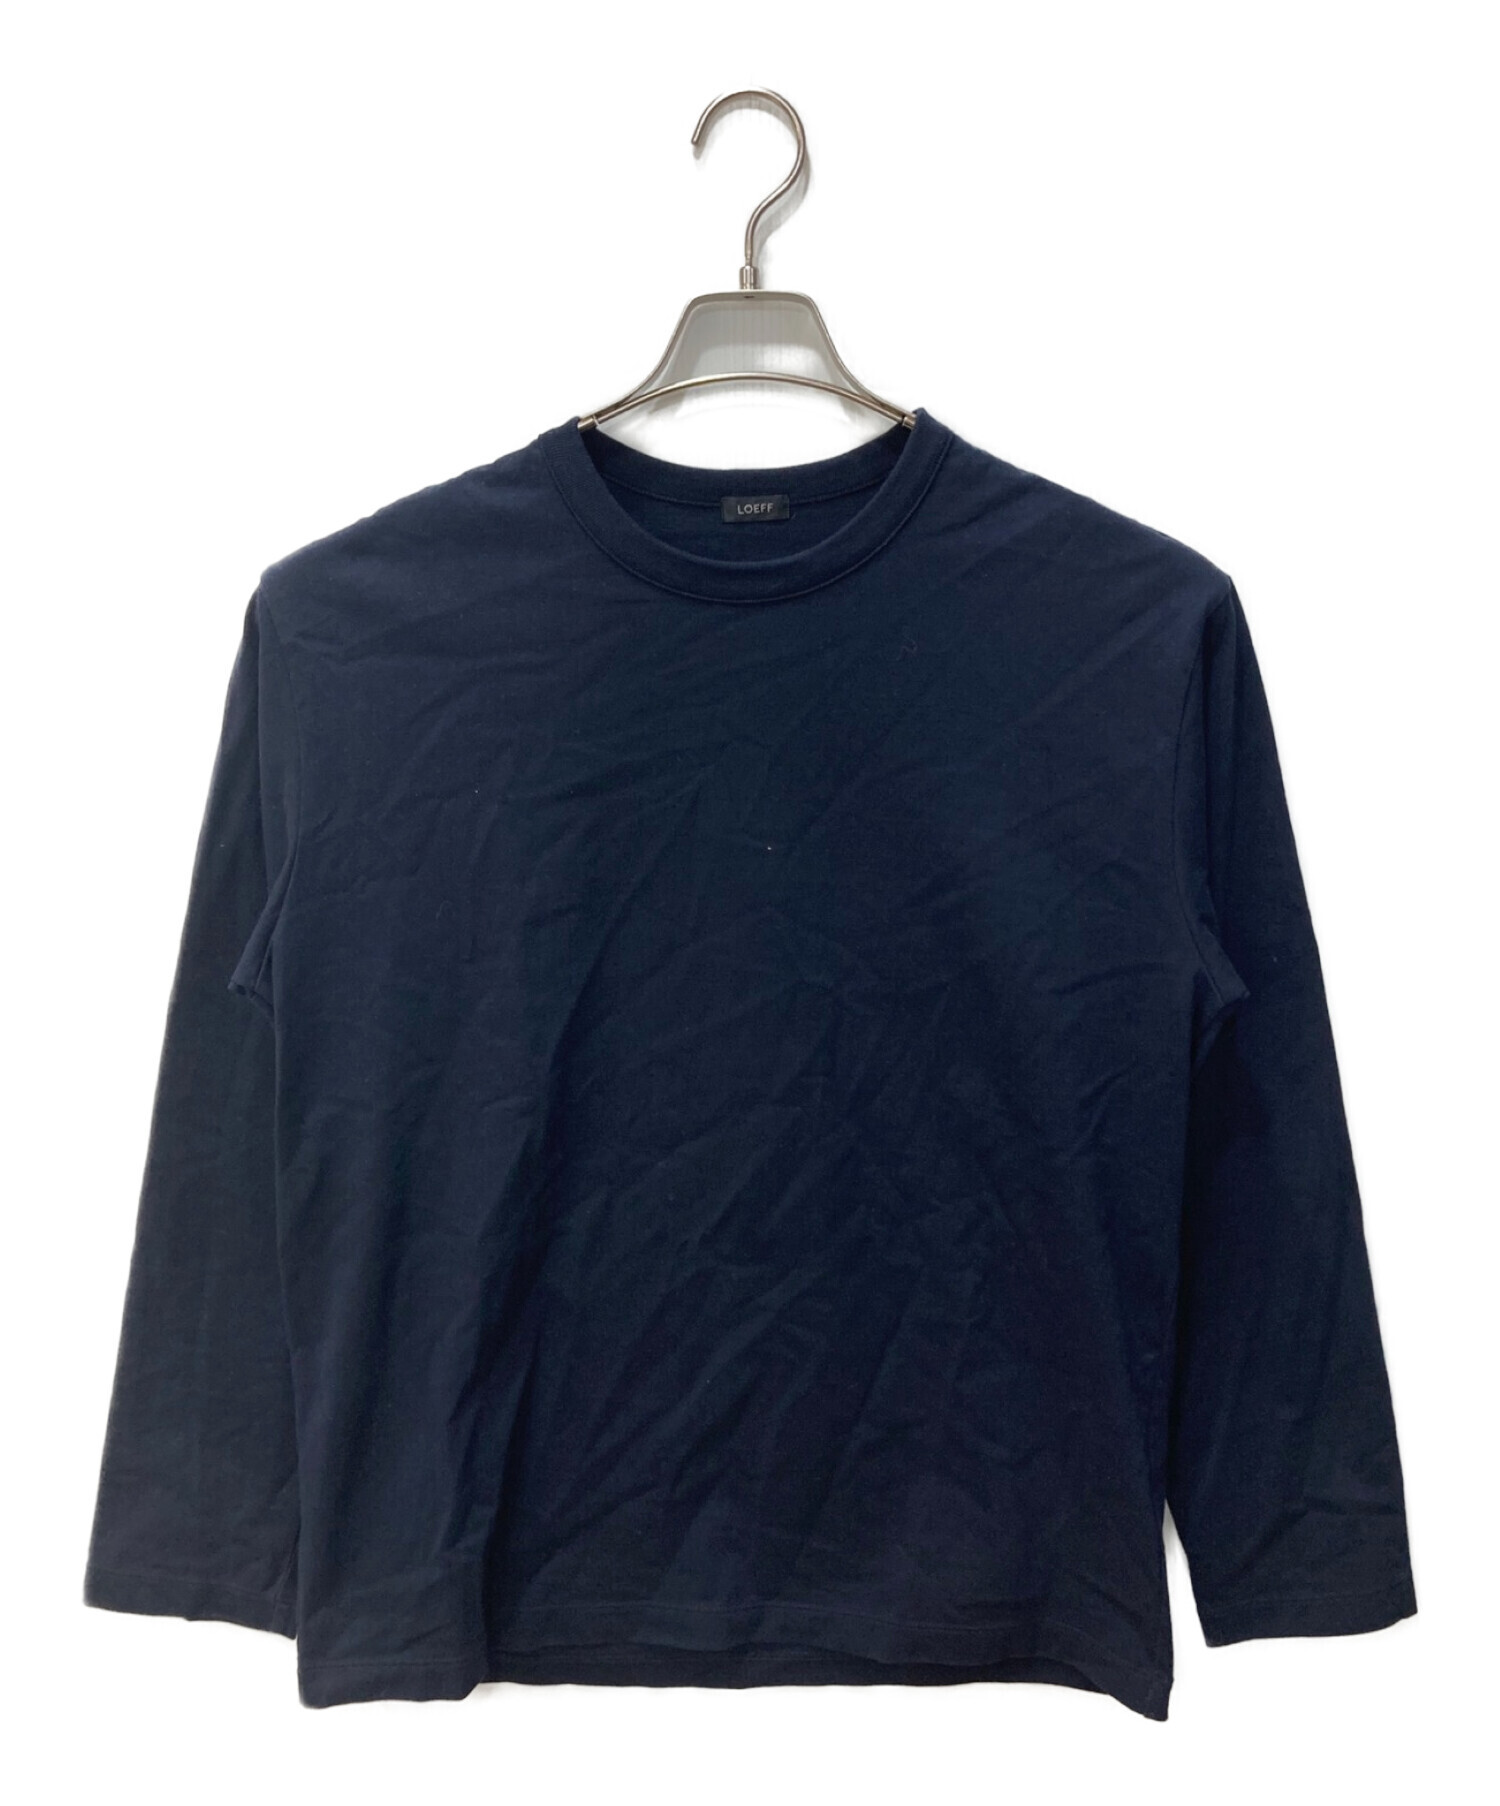 LOEFF (ロエフ) オーガニックコットンクレセントスリーブTシャツ ネイビー サイズ:1